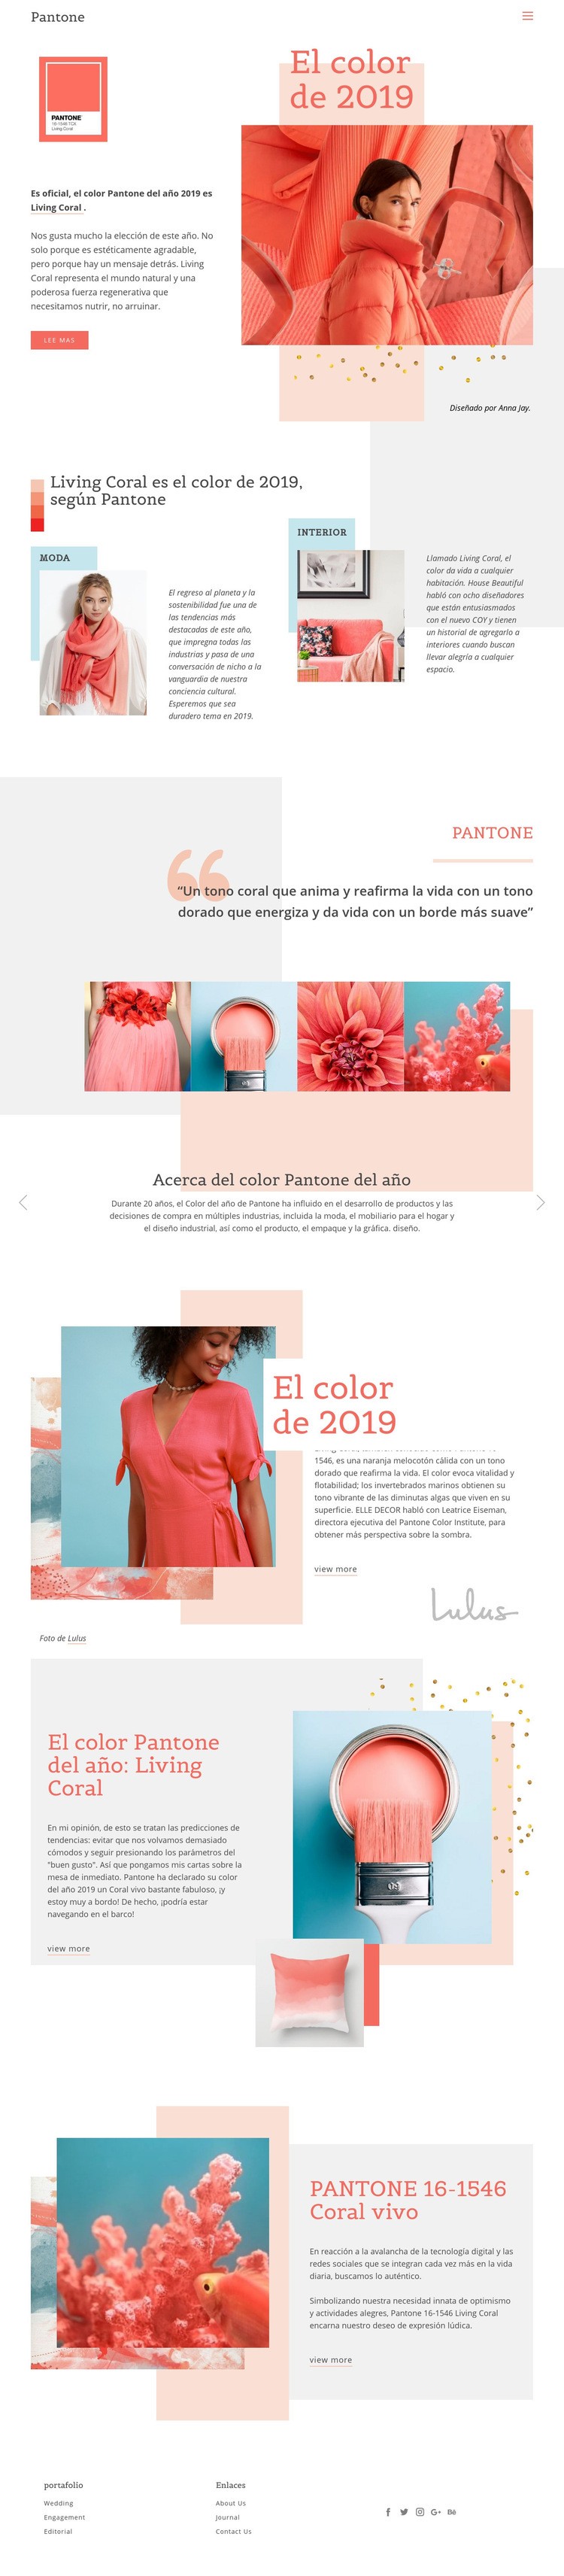 Color de 2019 Plantillas de creación de sitios web